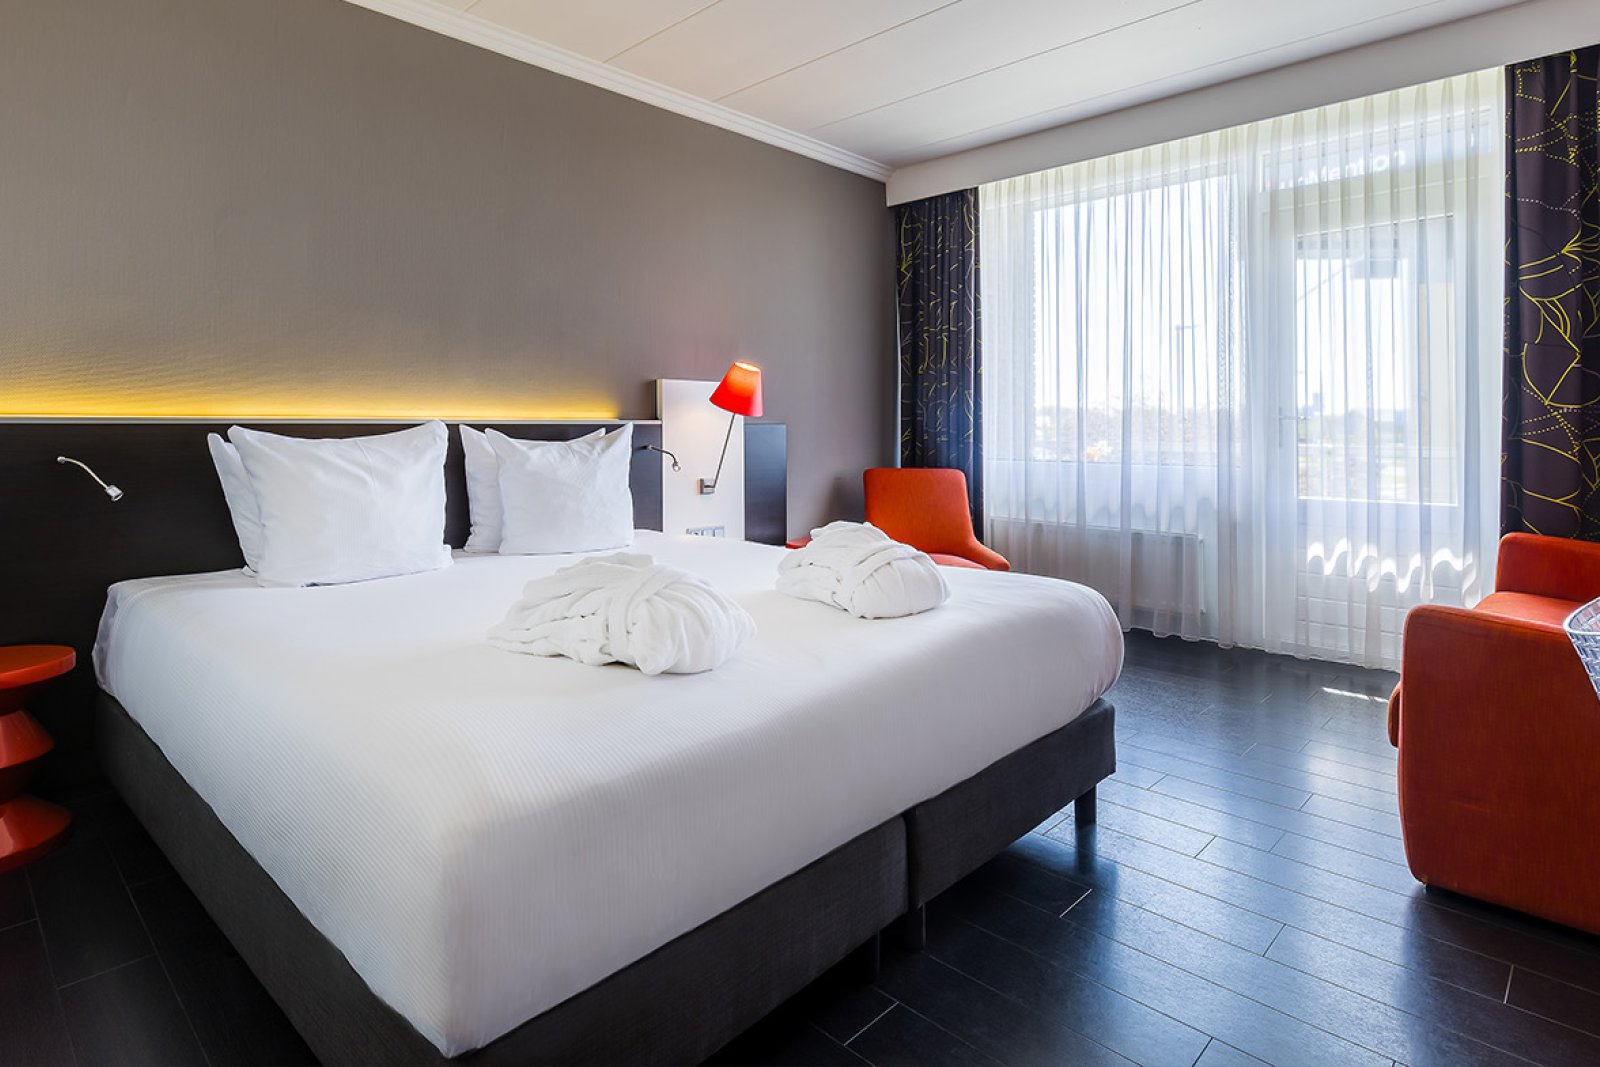 Postillion Hotel Utrecht - Bunnik hotel room